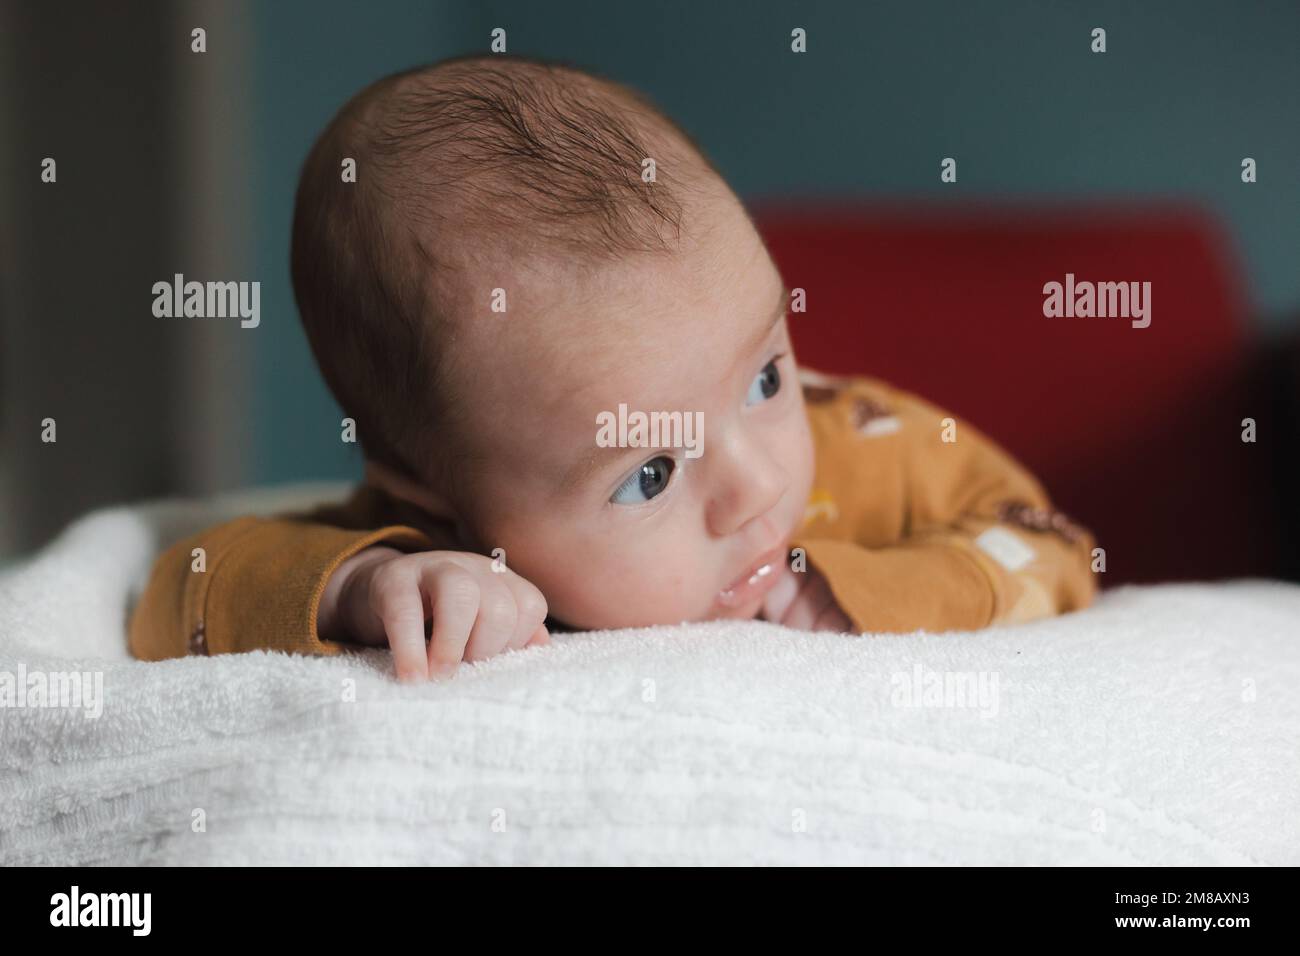 Süßer kleiner Junge im Alter von 3 bis 6 Monaten, der auf dem Bauch liegt und von der Kamera wegsieht, mit einem ernsten Gesichtsausdruck Stockfoto